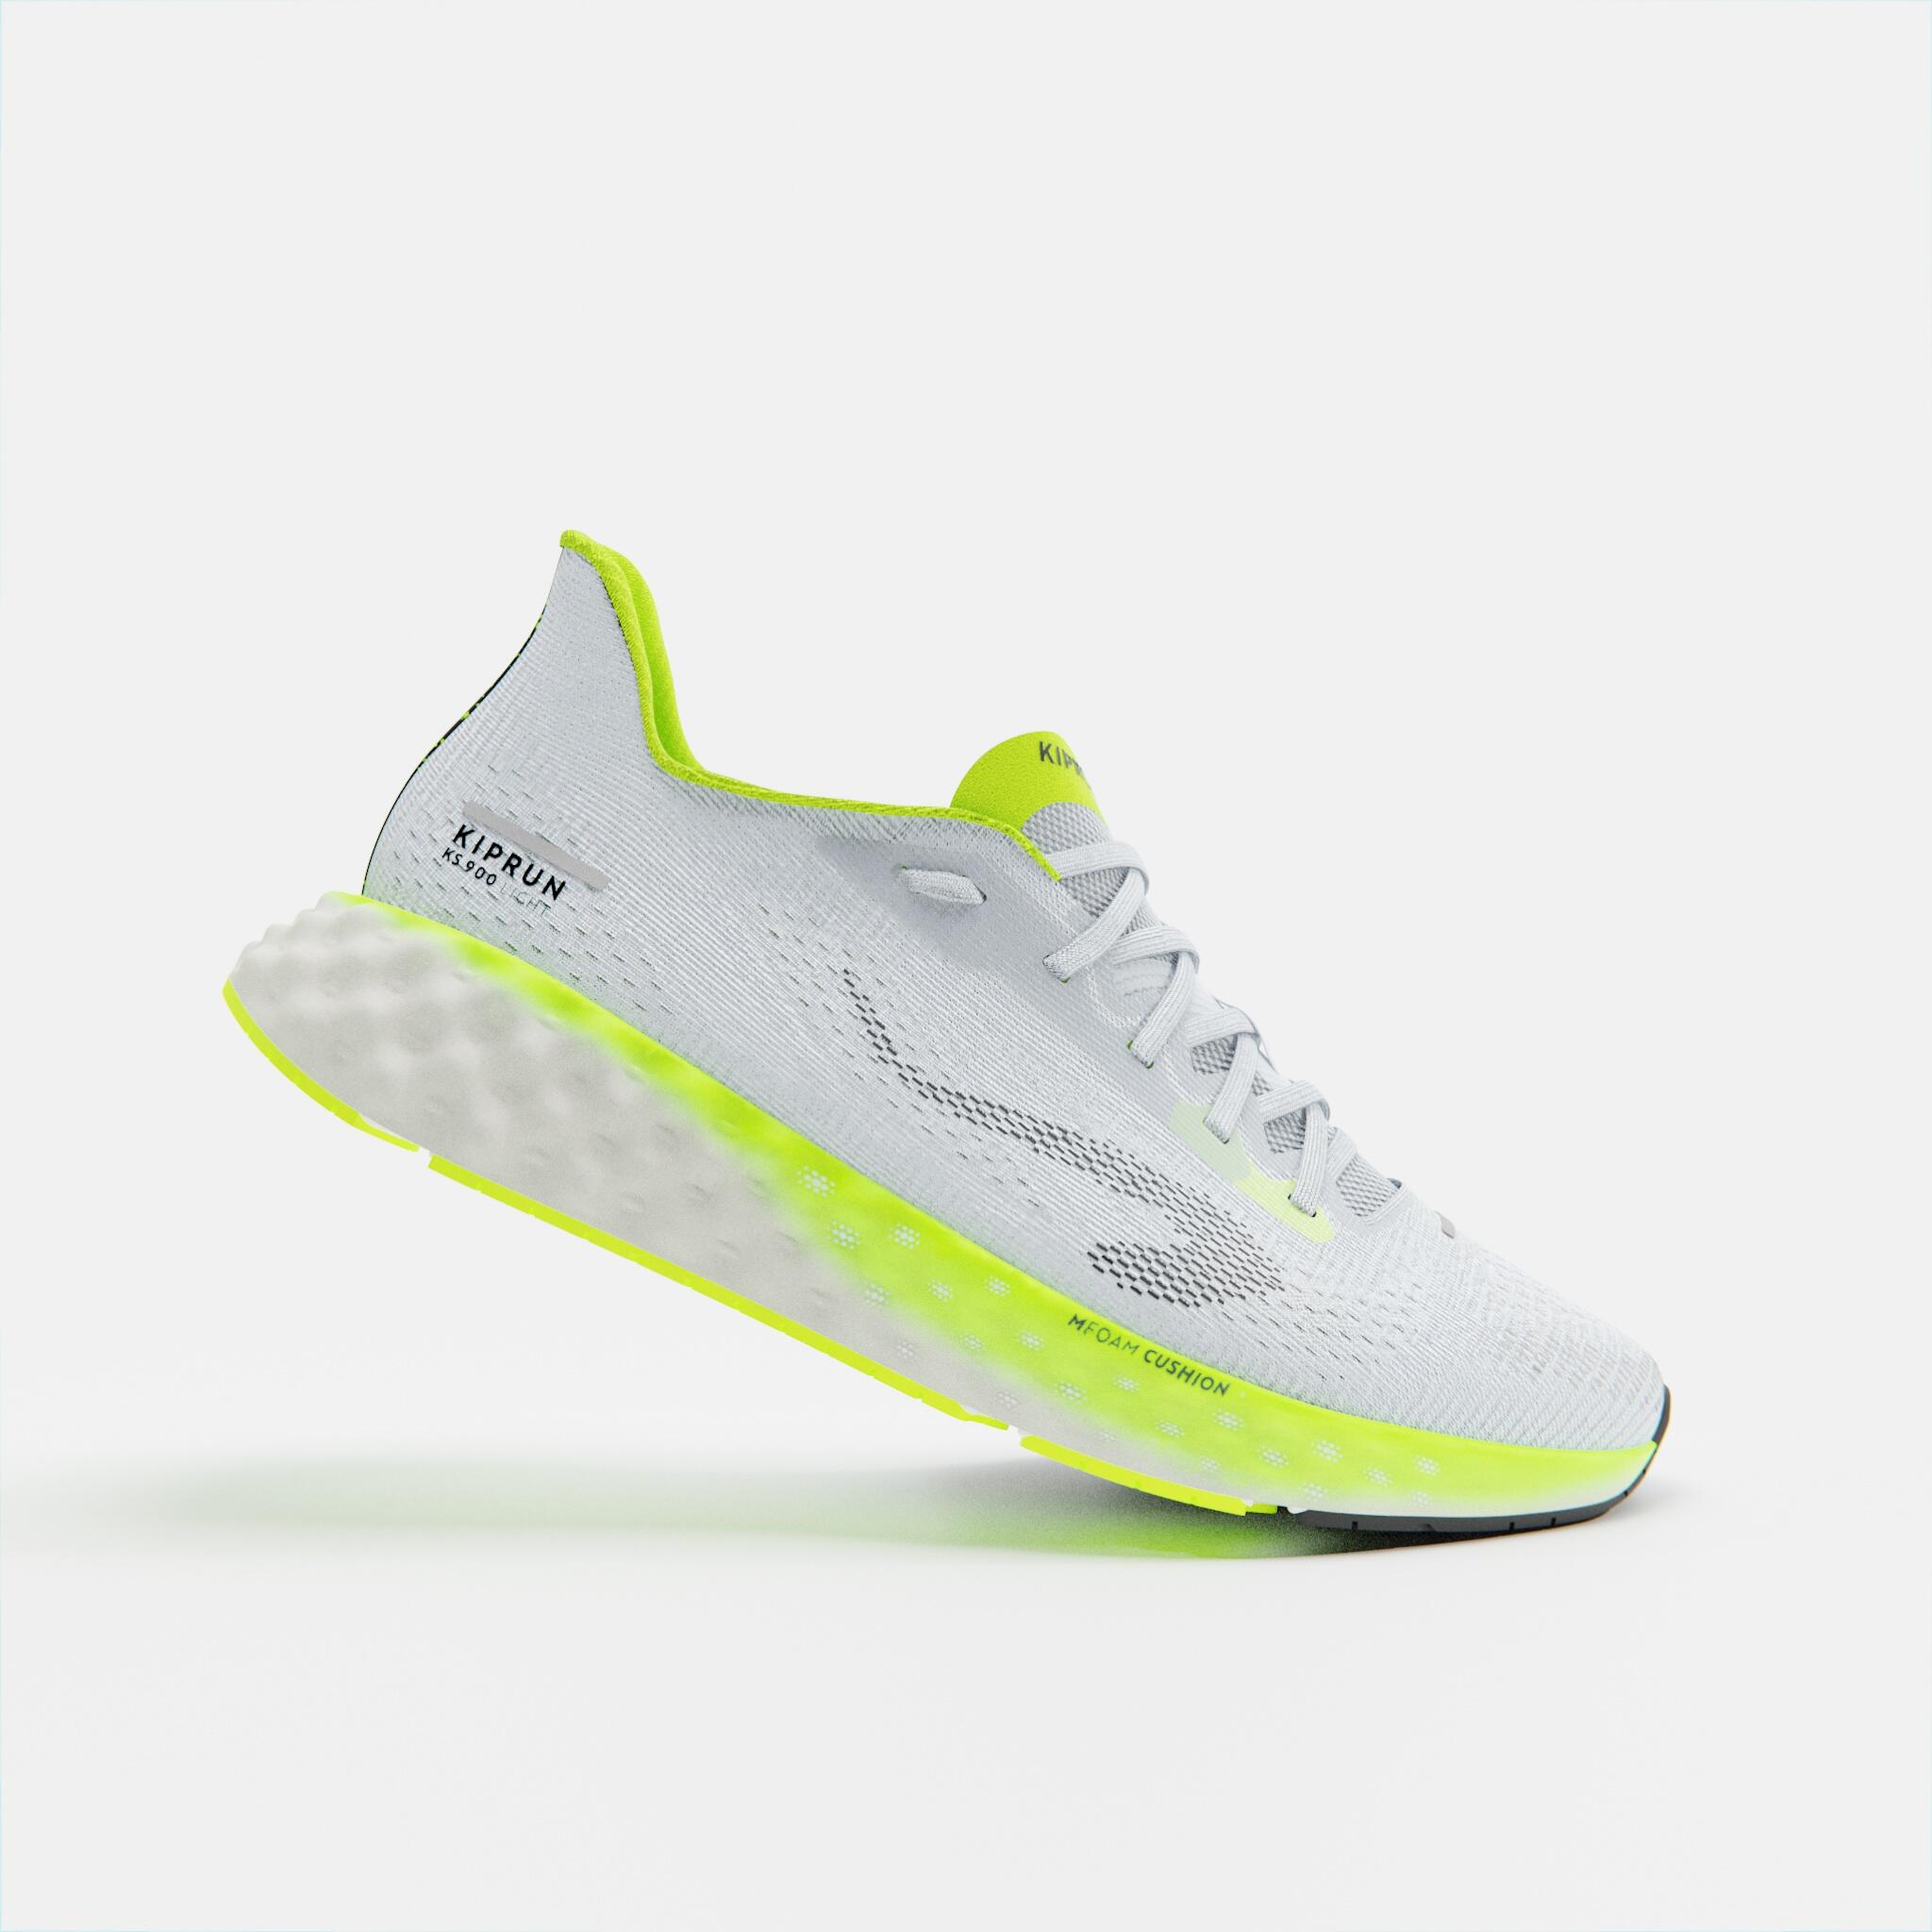 Image of Men's Light Running Shoes - KS 900